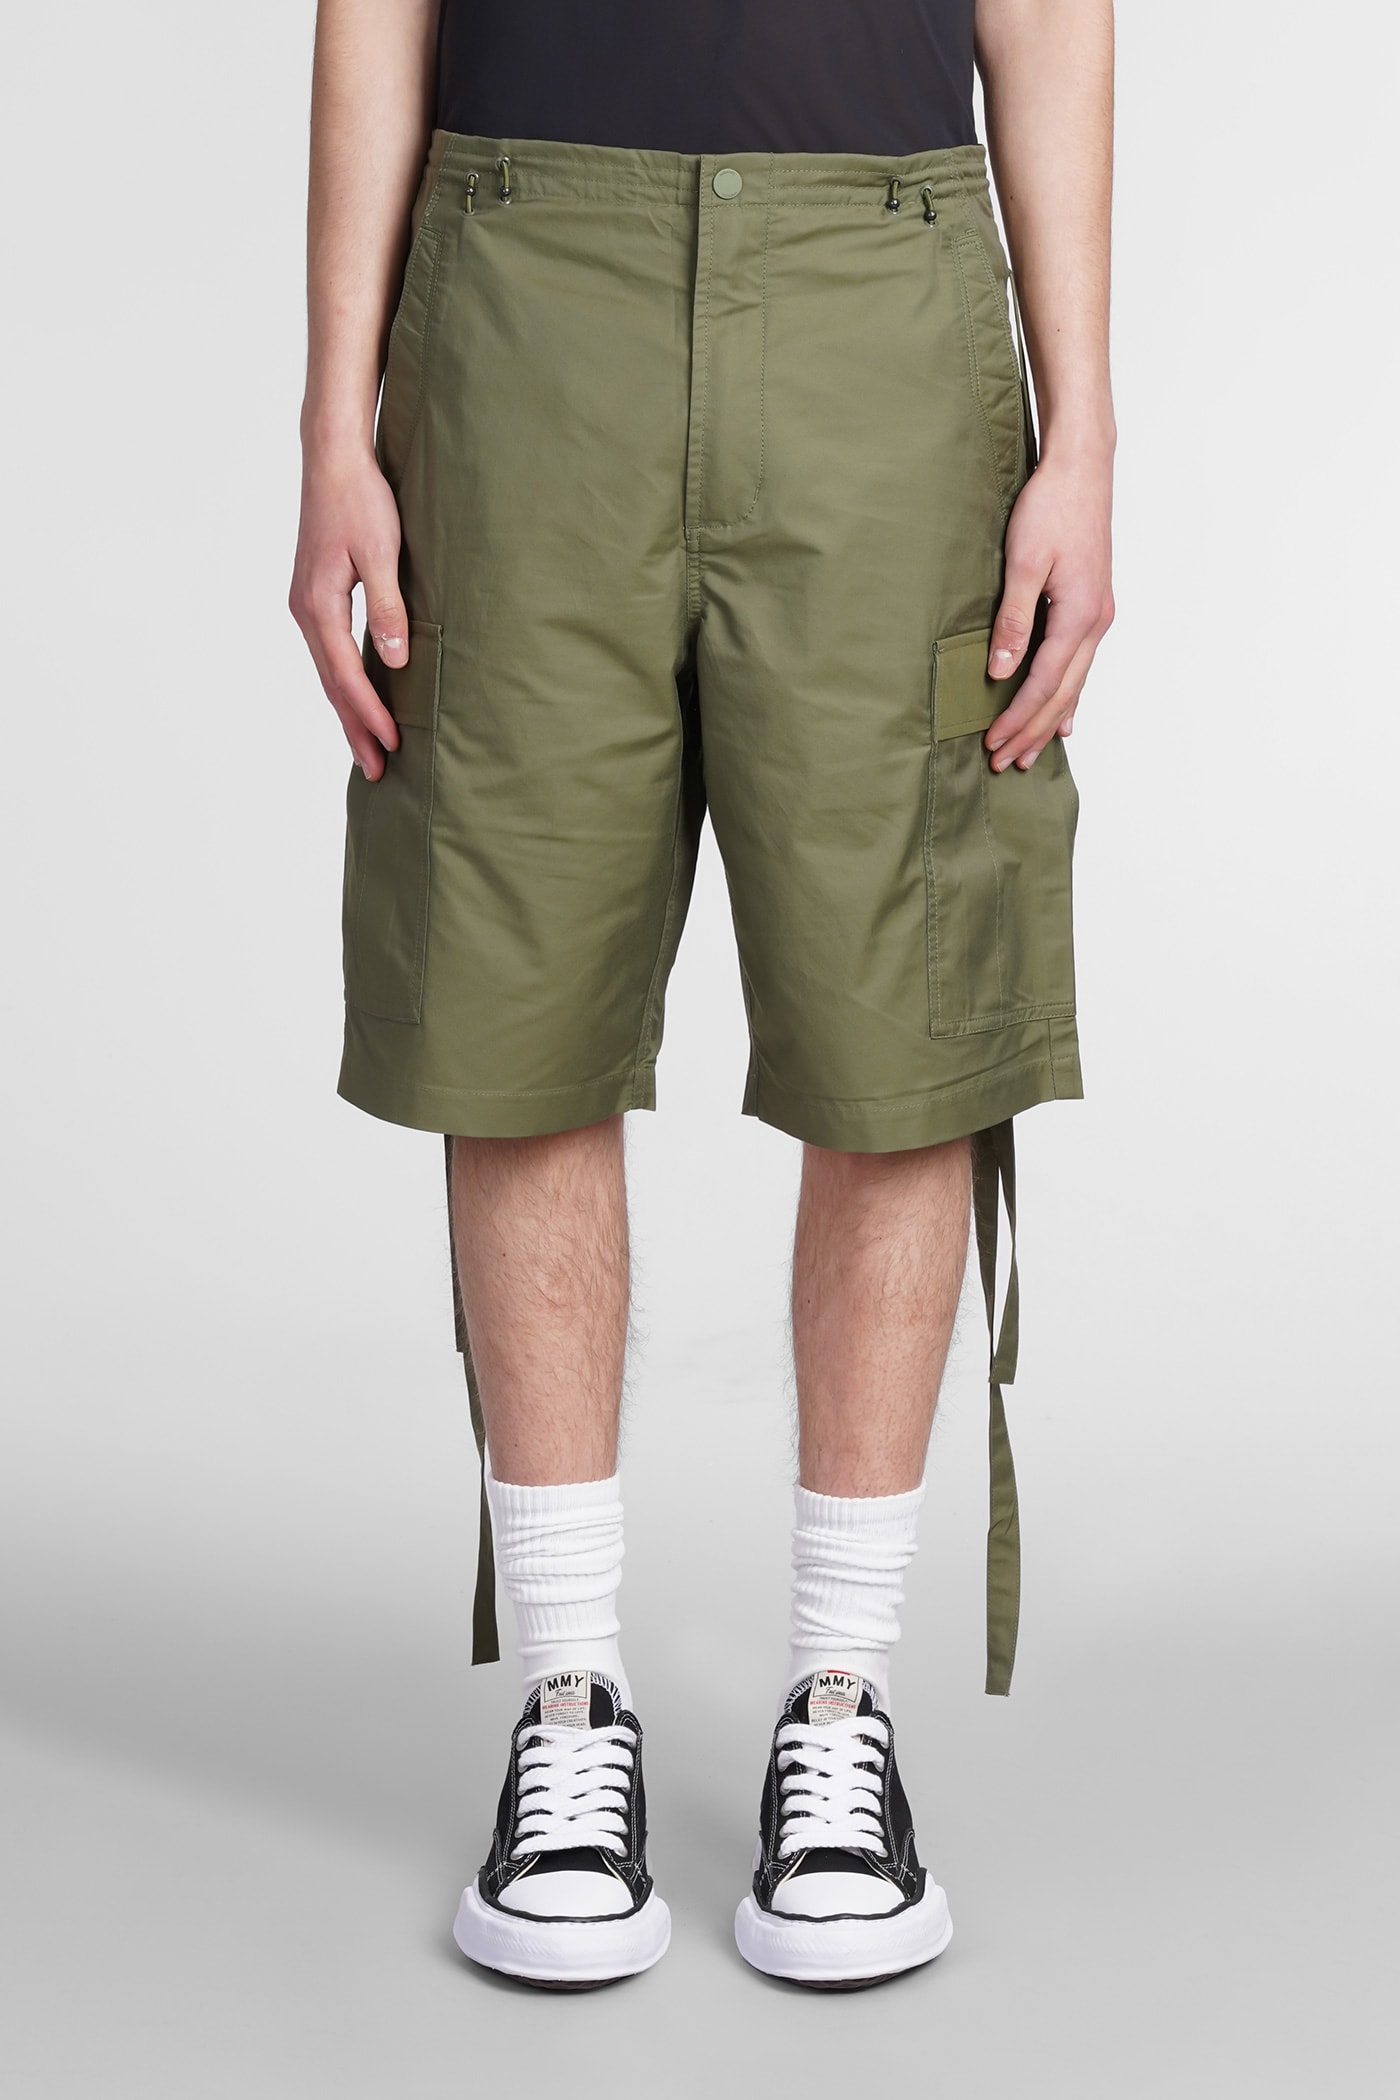 Maharishi Shorts In Green Cotton